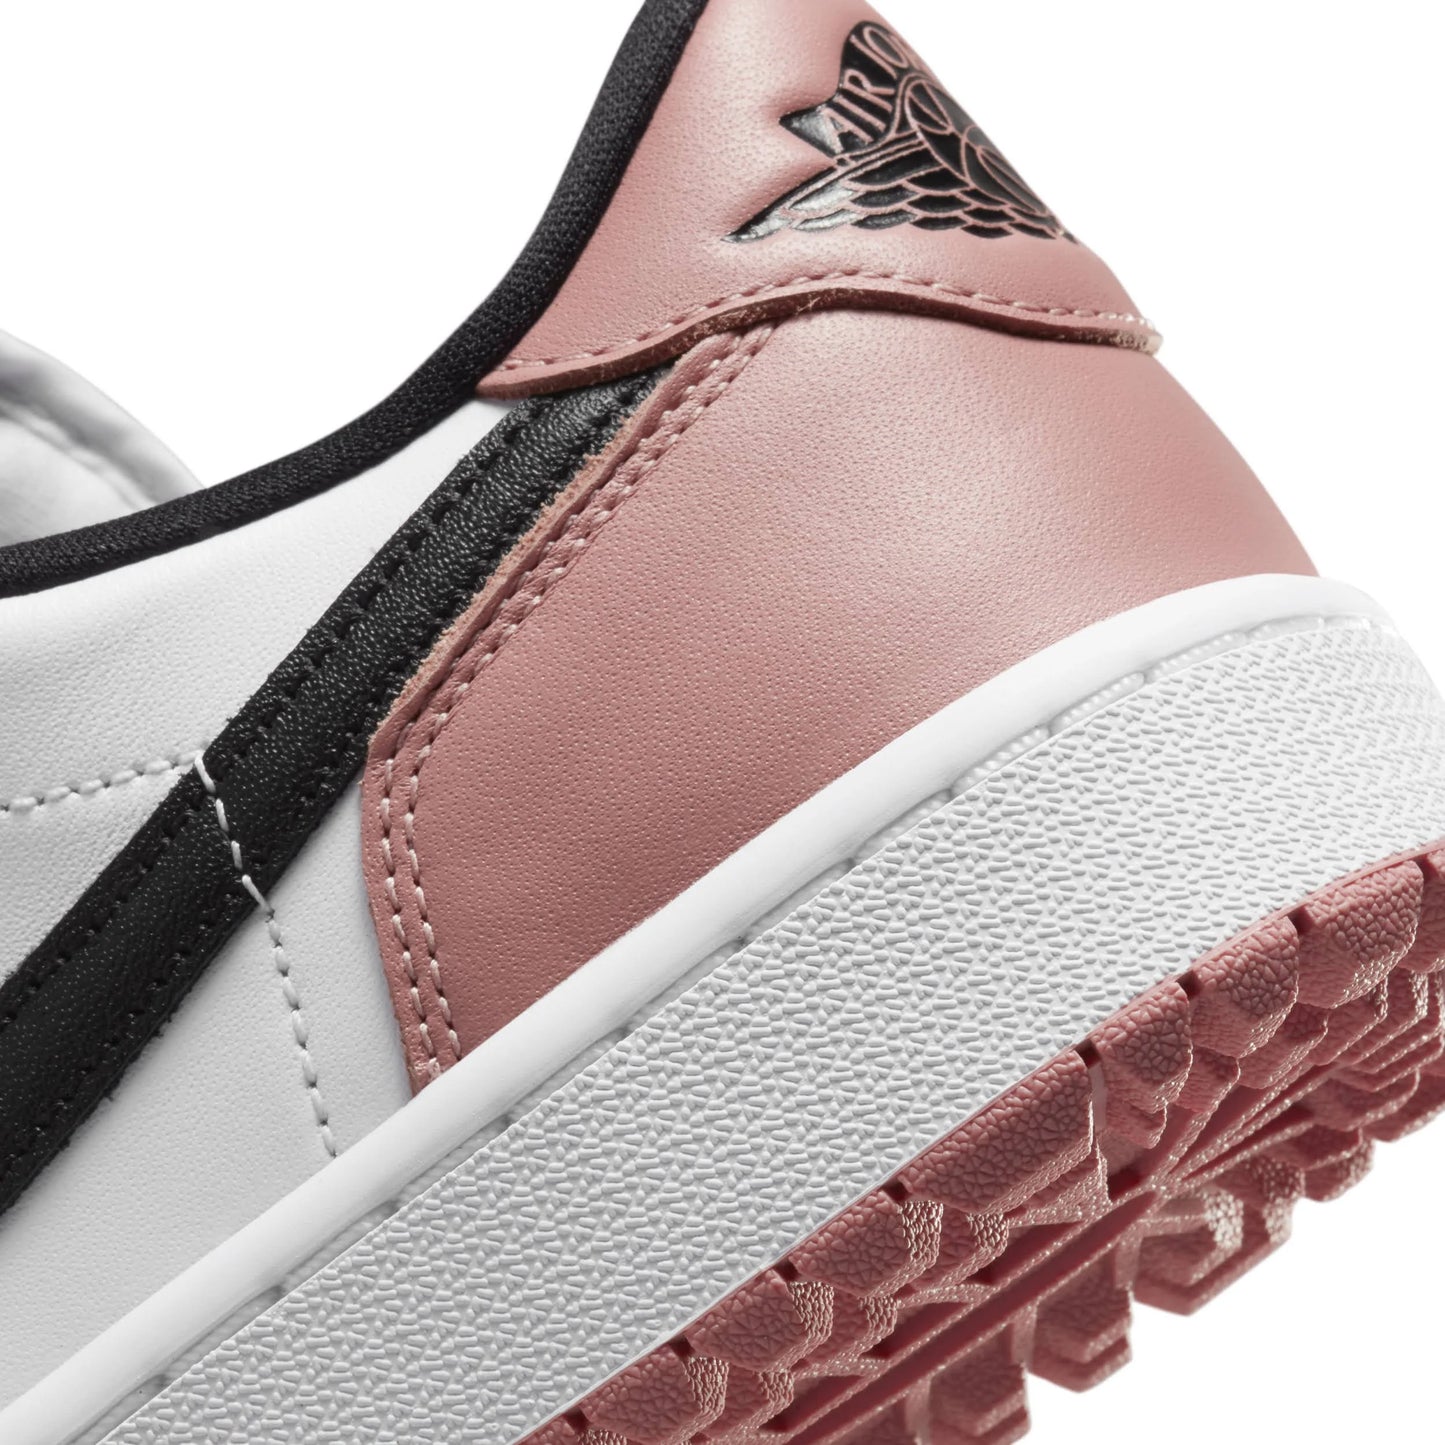 Nike Air Jordan 1 Retro Low Golf Rust Pink